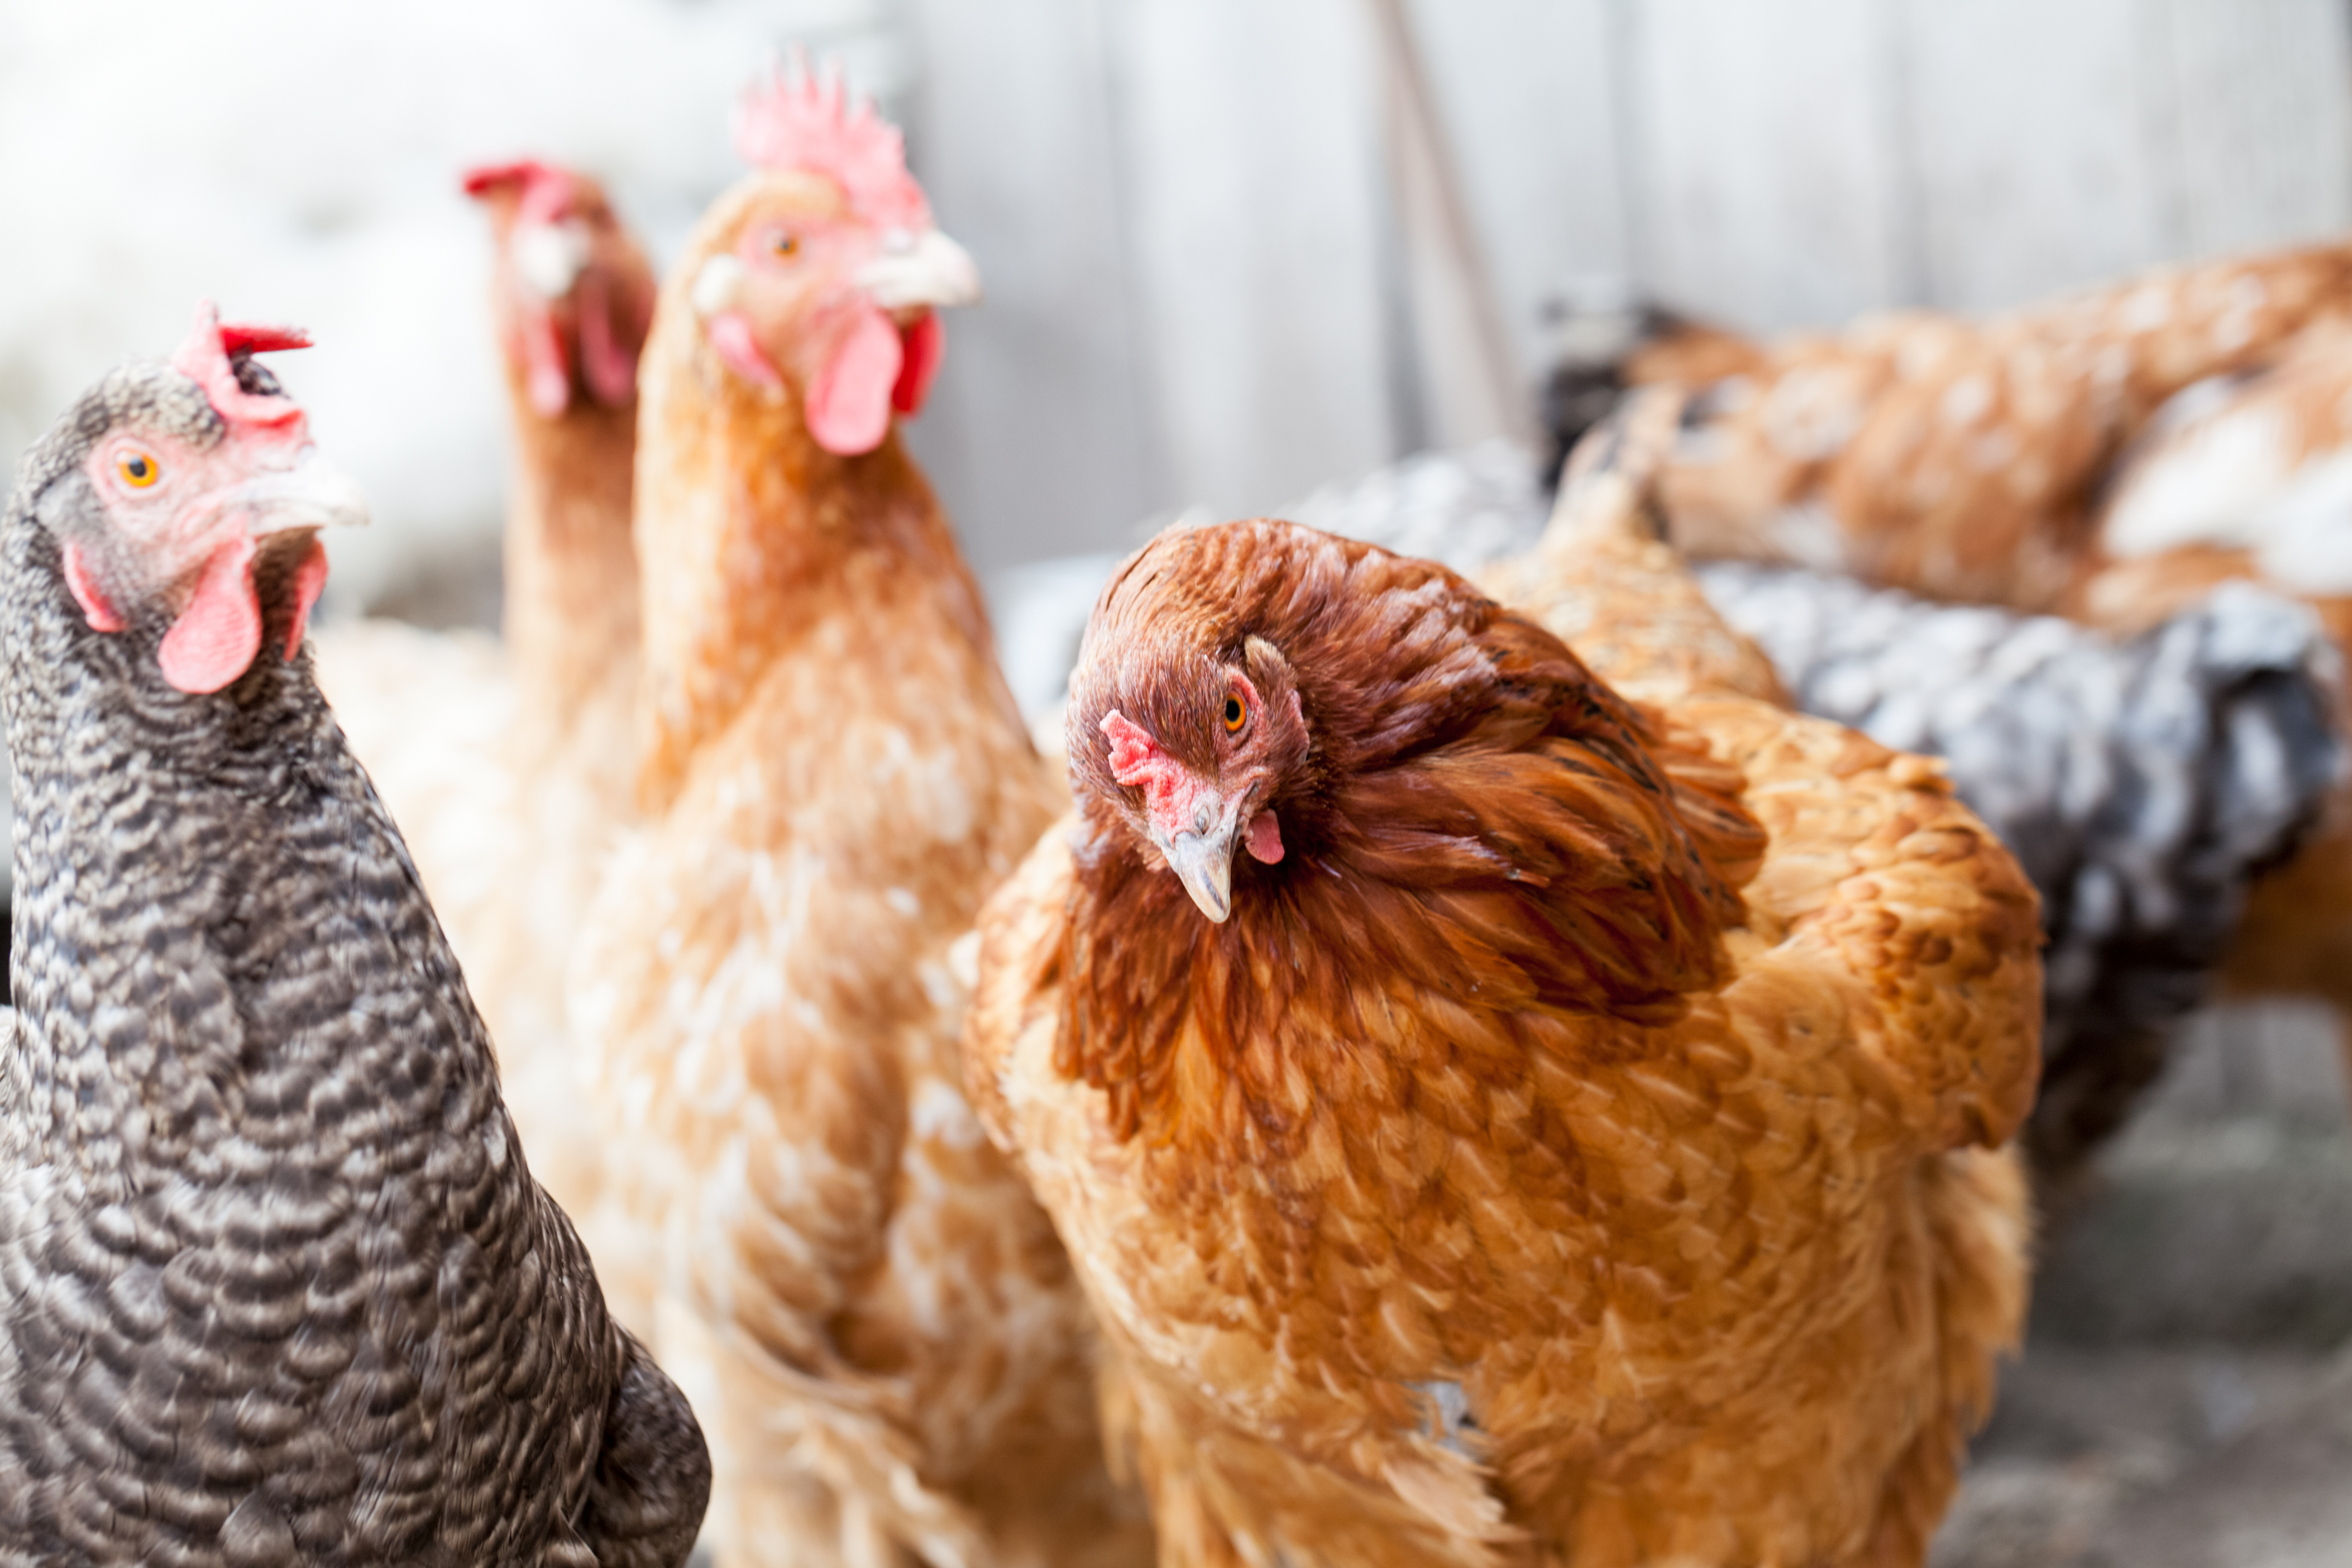 Update on Avian Flu in Warwickshire